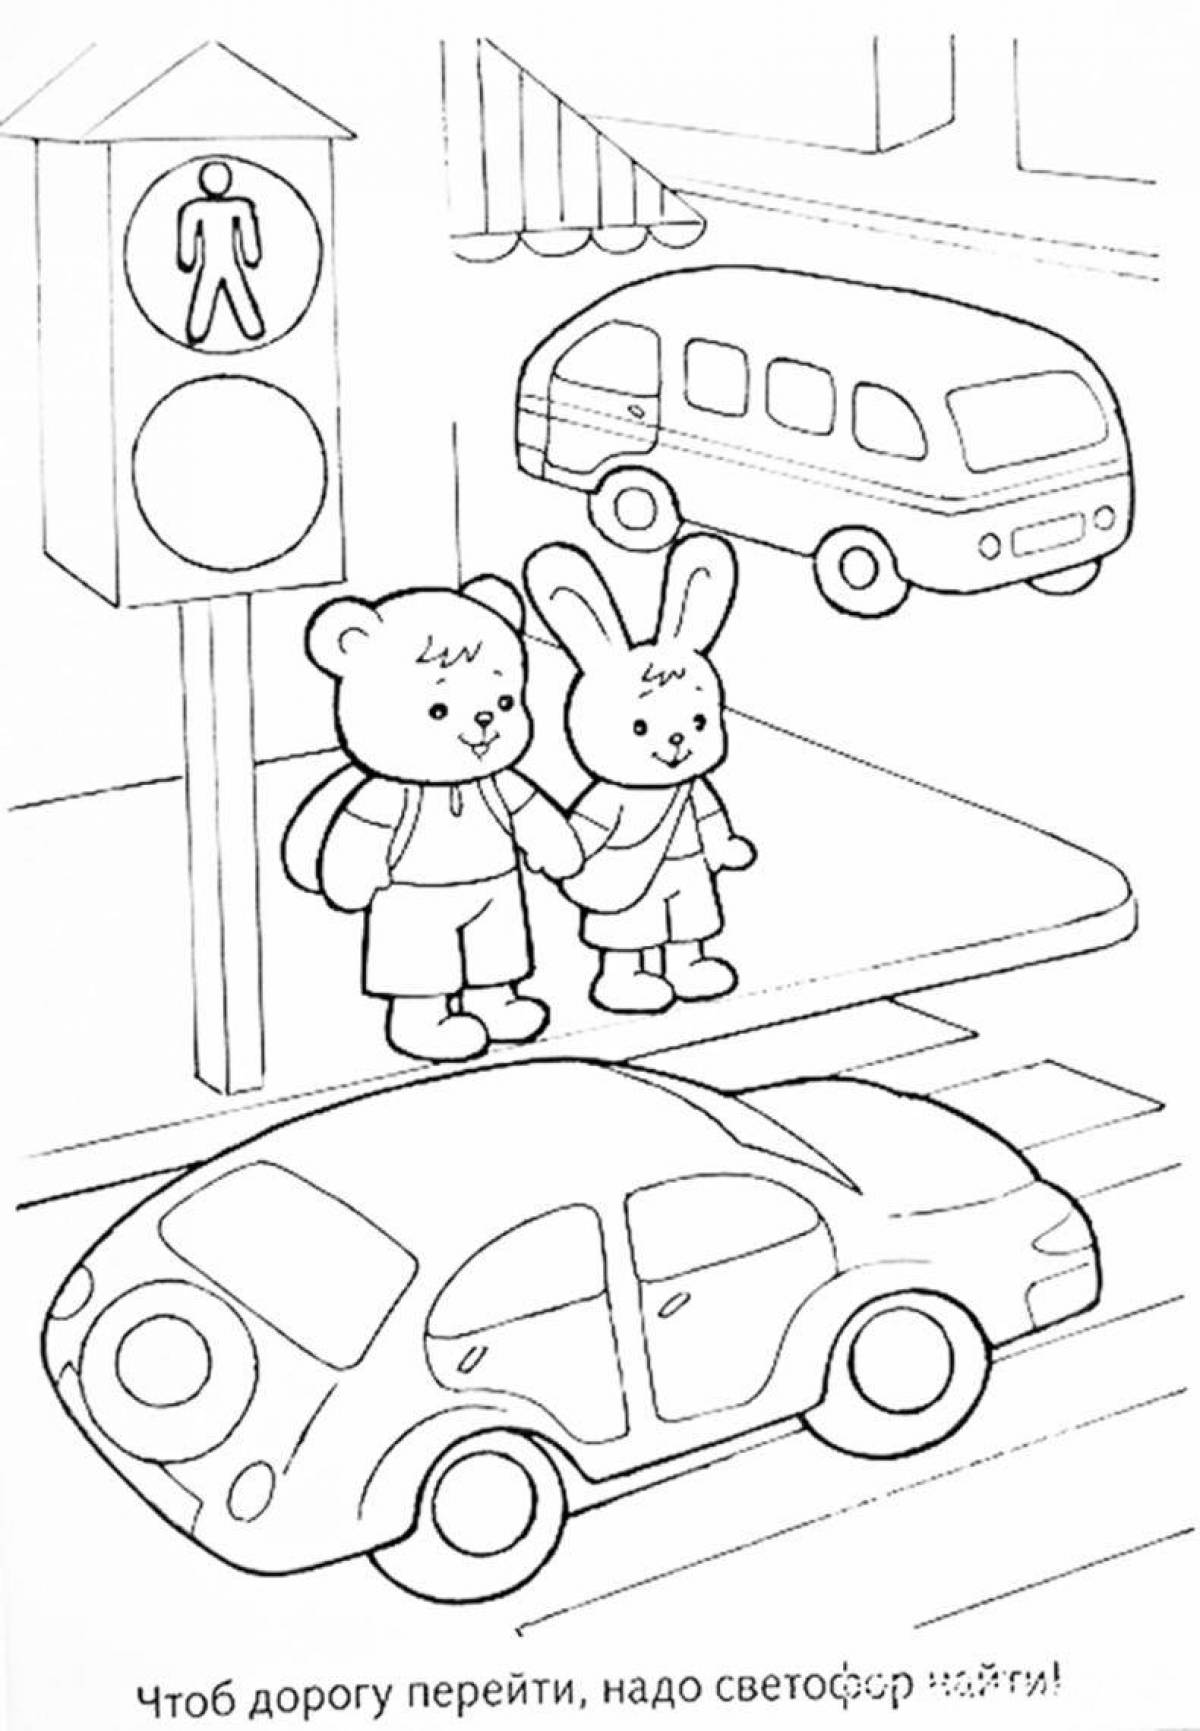 Увлекательная страница «правила дорожного движения» для детей 5-6 лет